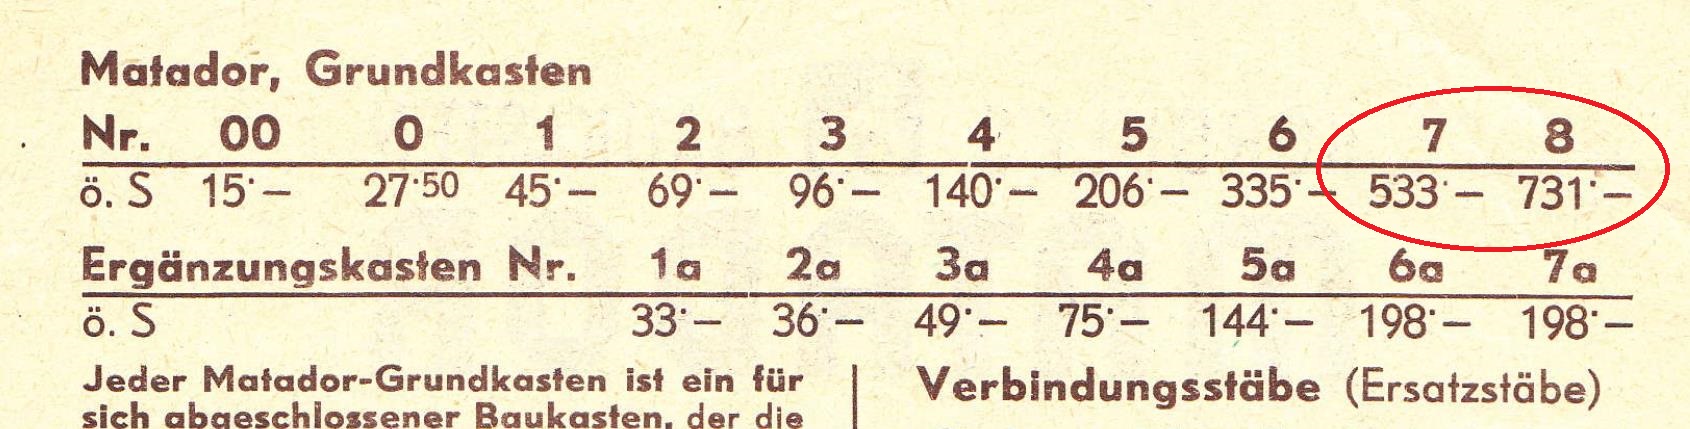 Österreichische Matador-Werbung und Preisliste (1957).jpg